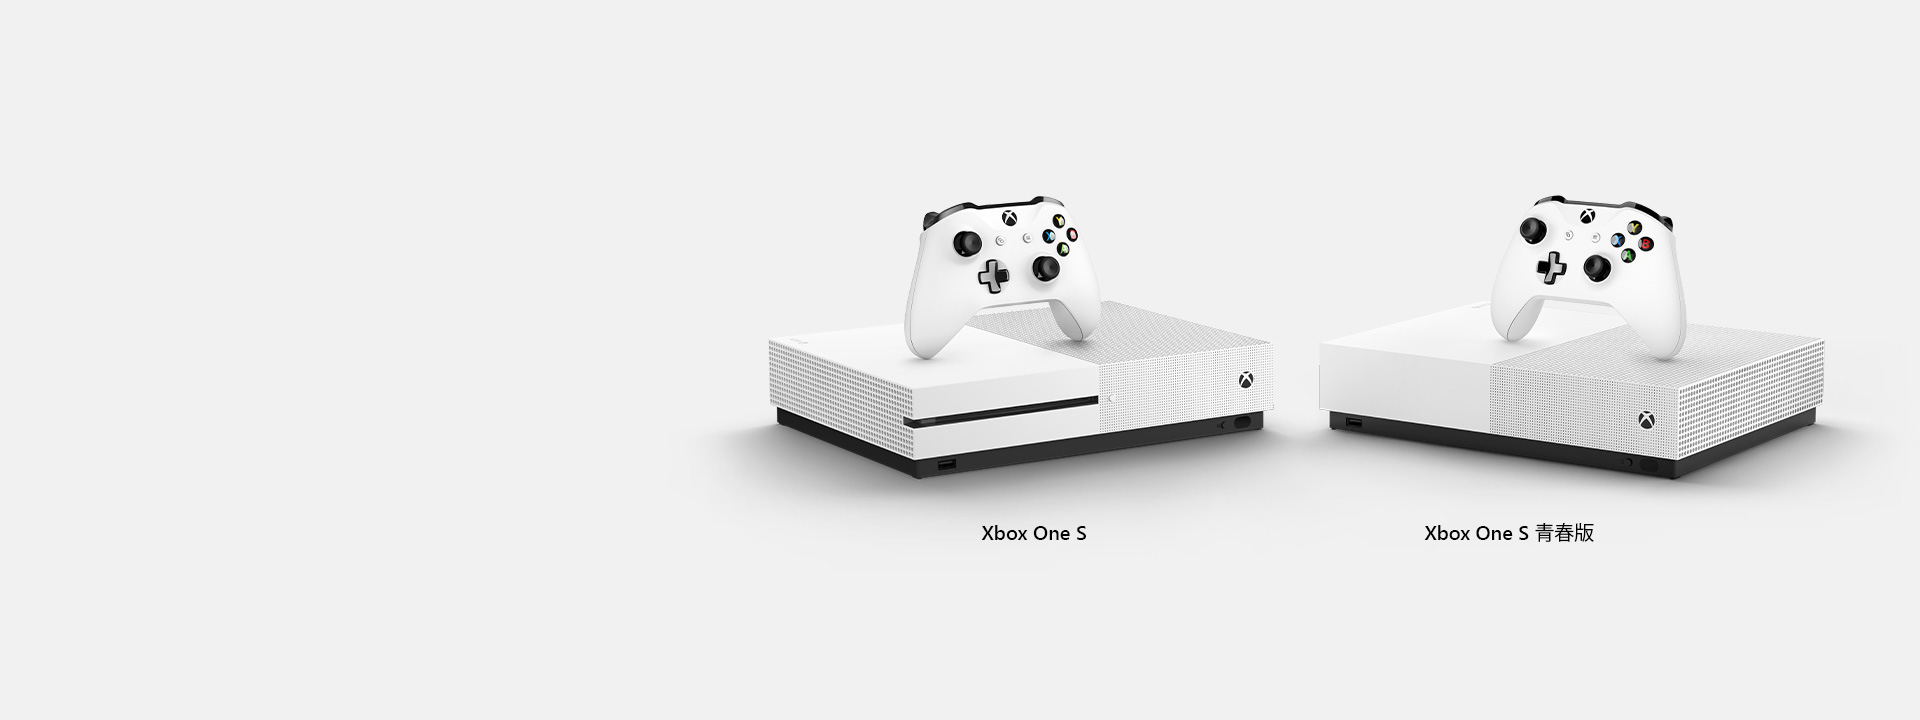 Xbox One S 正面视图